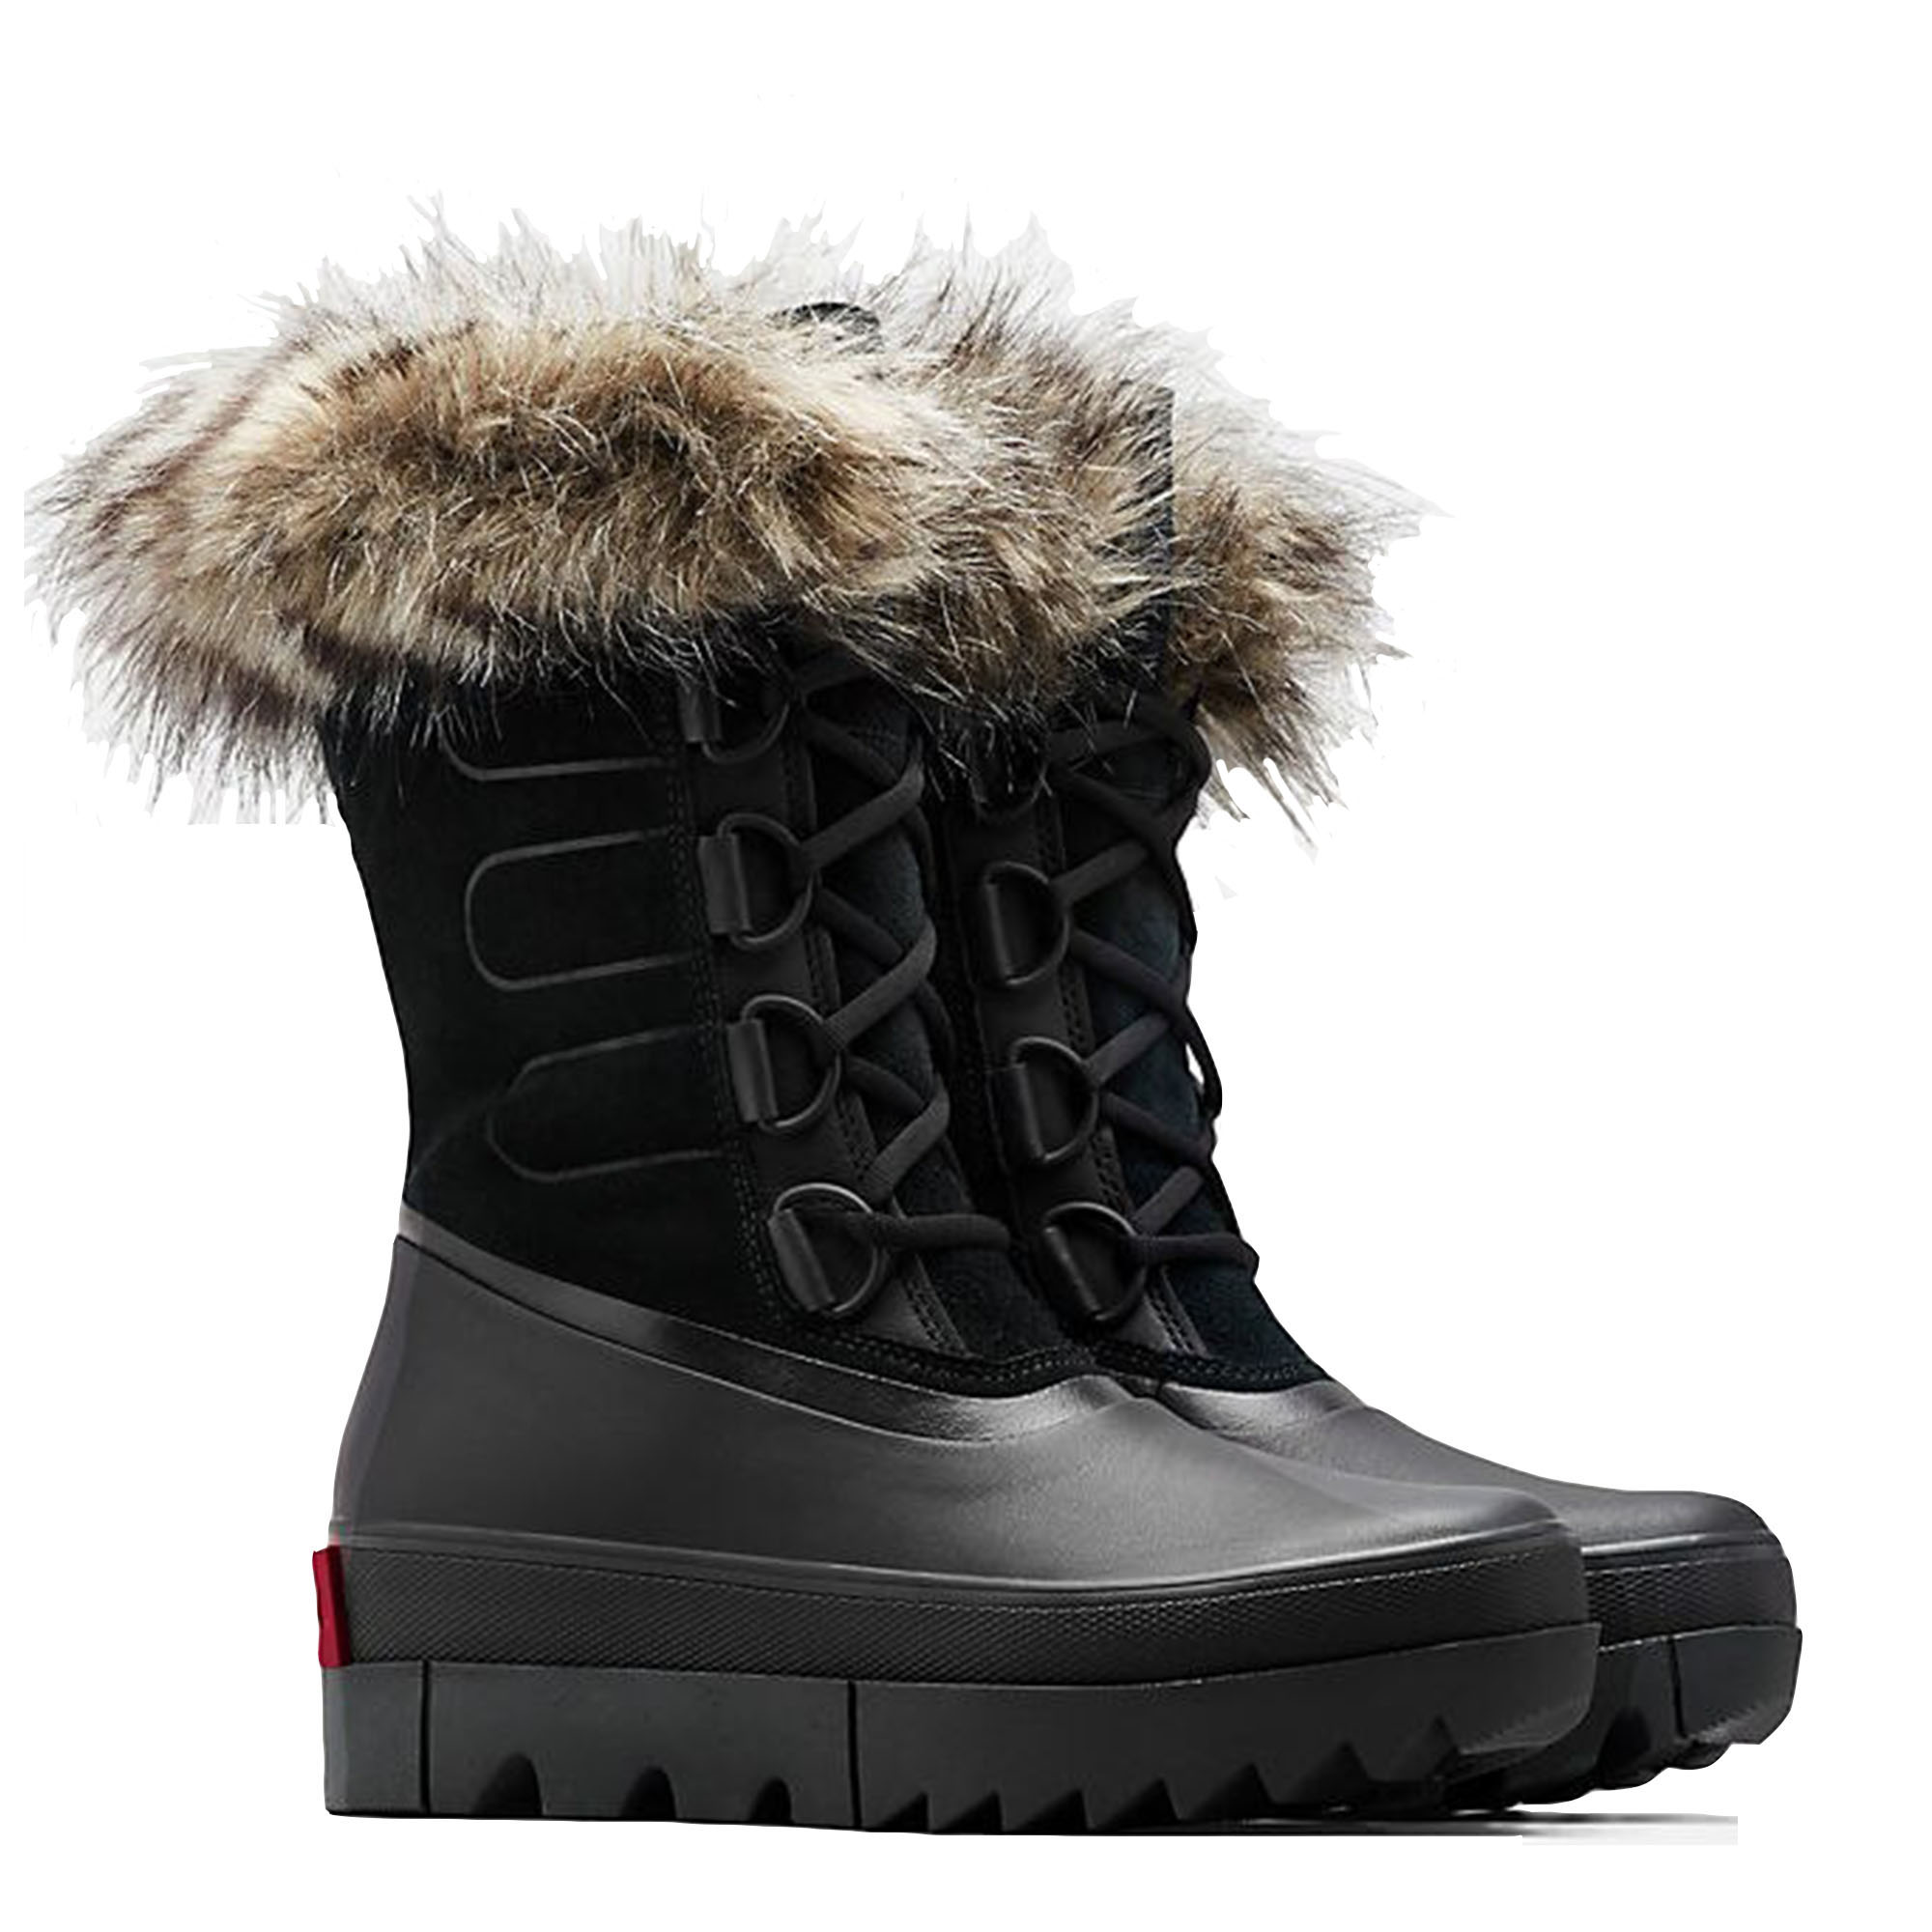 winter boots next